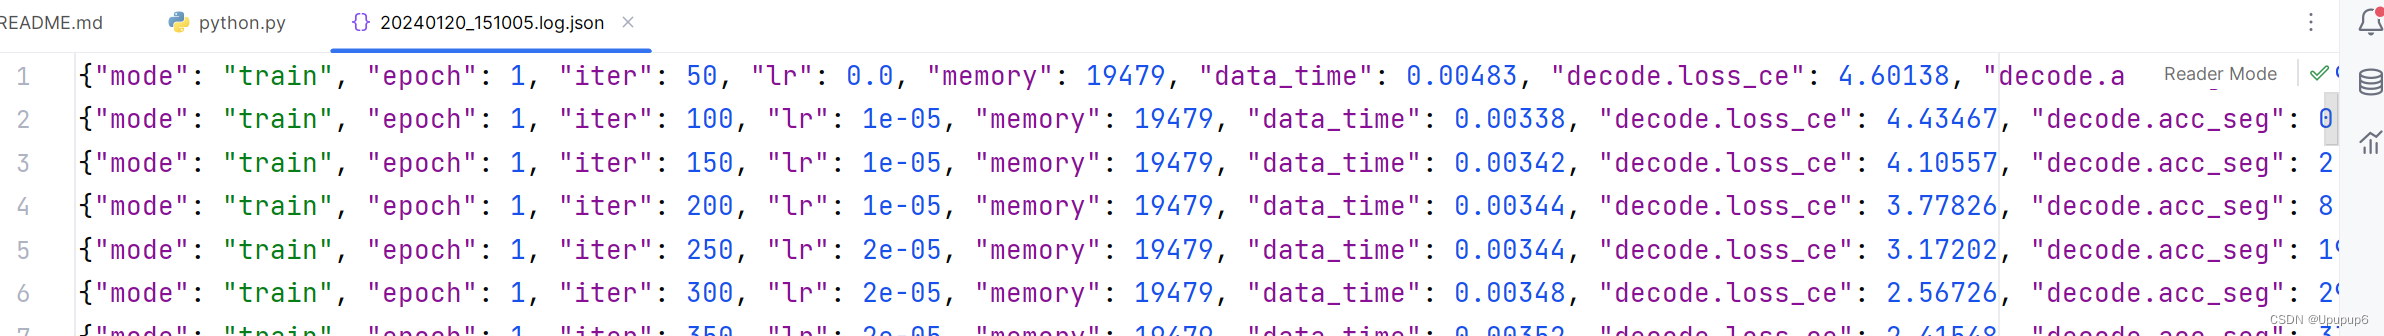 打开json文件，读取里边的每一行数据，每一行数据是一个字典，使用matplotlib画图